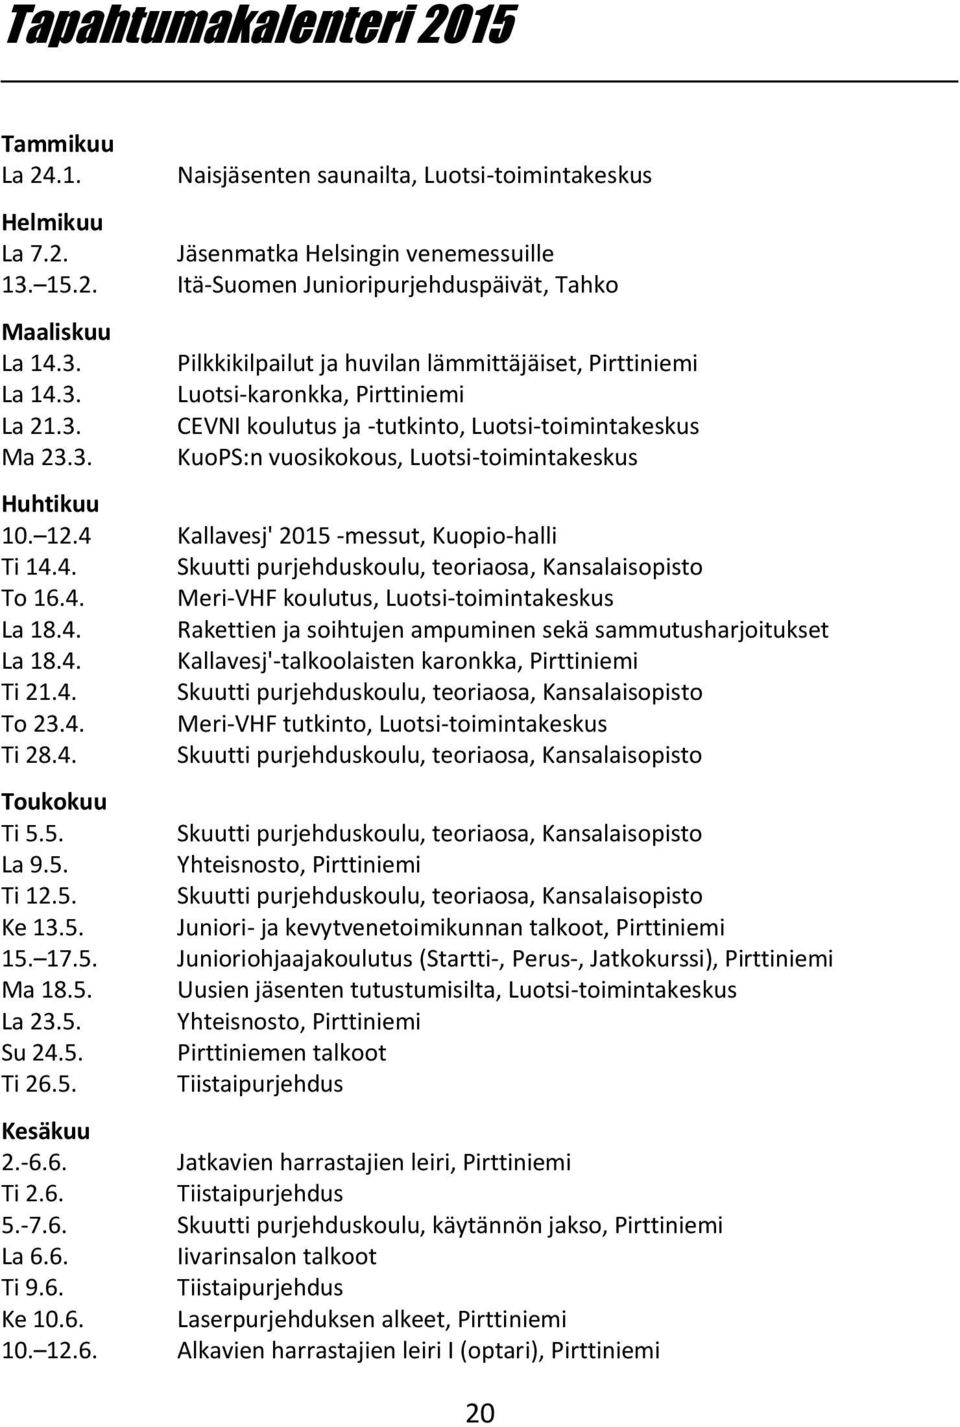 12.4 Kallavesj' 2015 -messut, Kuopio-halli Ti 14.4. Skuutti purjehduskoulu, teoriaosa, Kansalaisopisto To 16.4. Meri-VHF koulutus, Luotsi-toimintakeskus La 18.4. Rakettien ja soihtujen ampuminen sekä sammutusharjoitukset La 18.